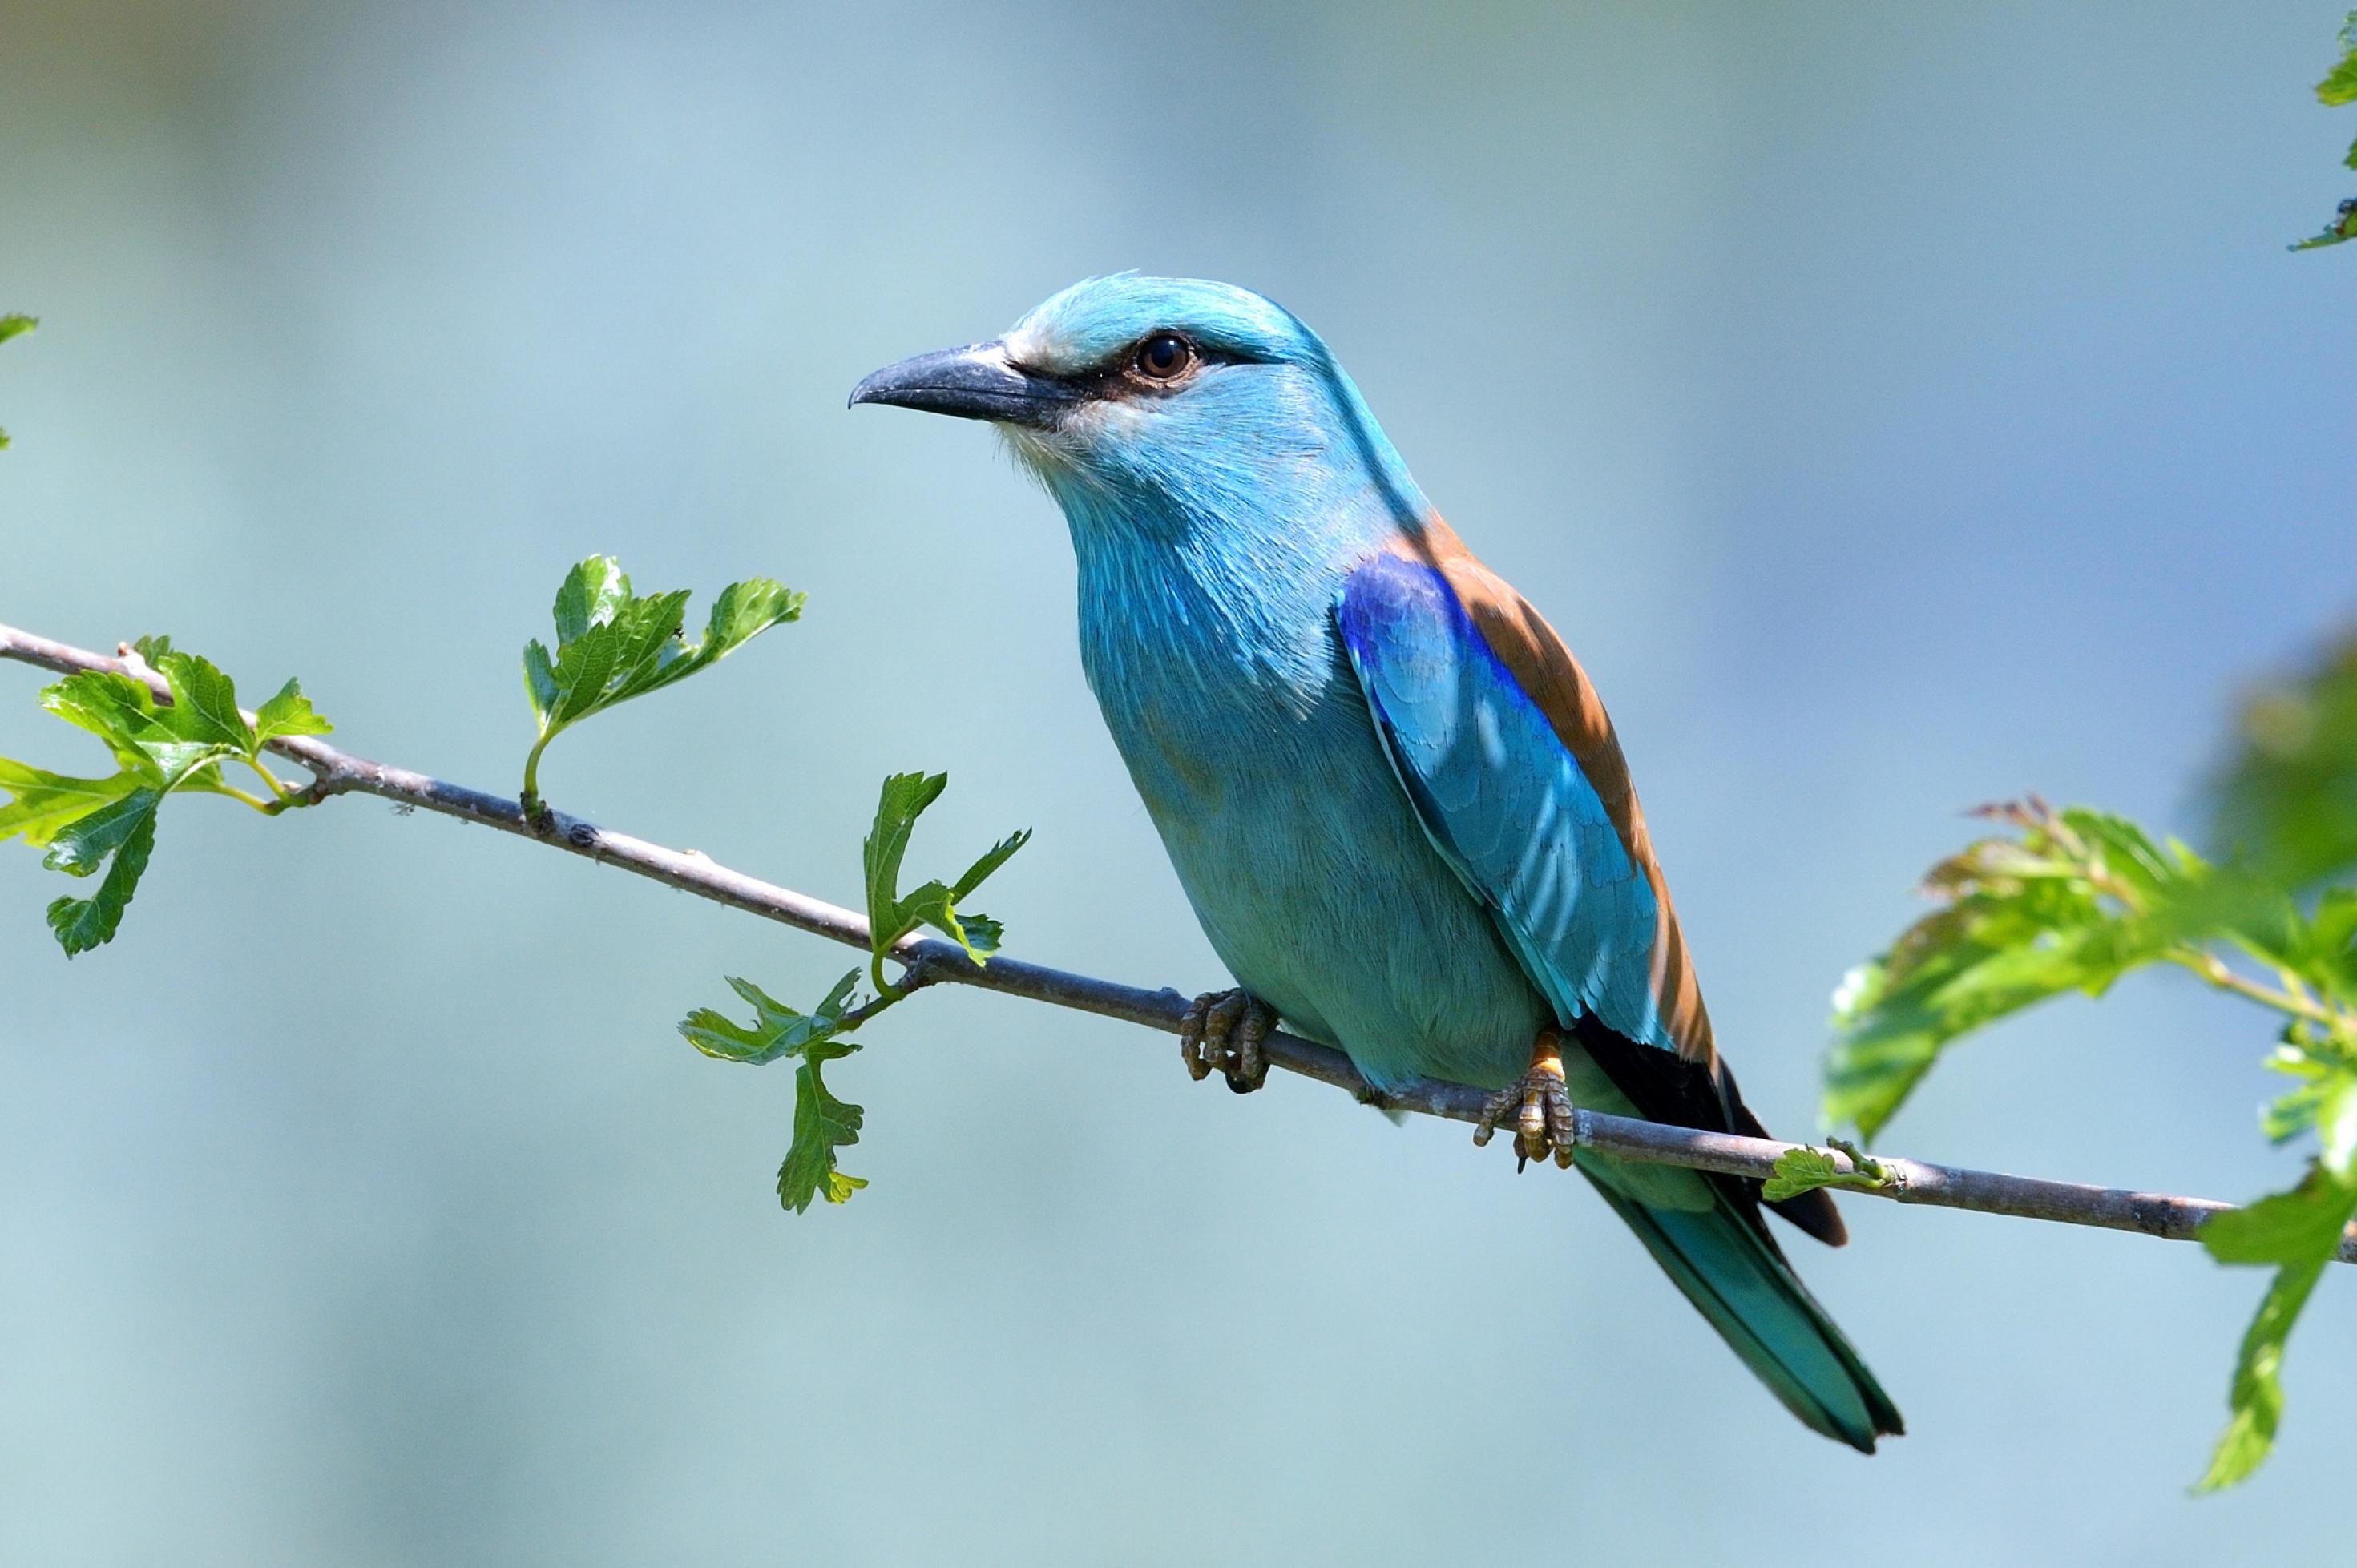 Hellblauer mittelgroßer Vogel mit elegantem Körperbau sitzt auf einem Ast.